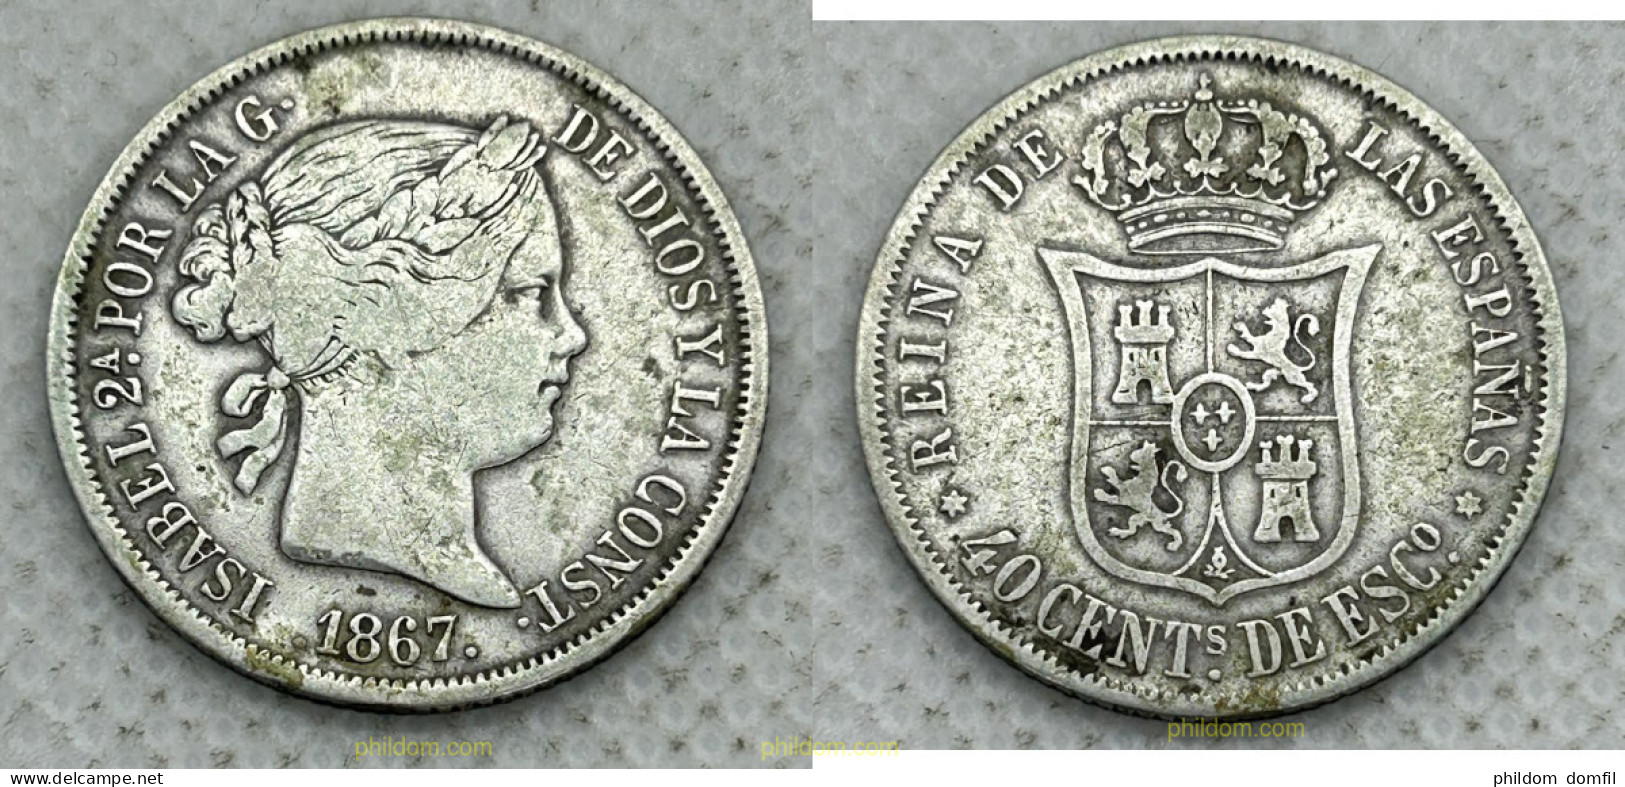 3712 ESPAÑA 1867 ISABEL II 1867 - 40 CENTIMOS DE ESCUDO MADRID - Colecciones